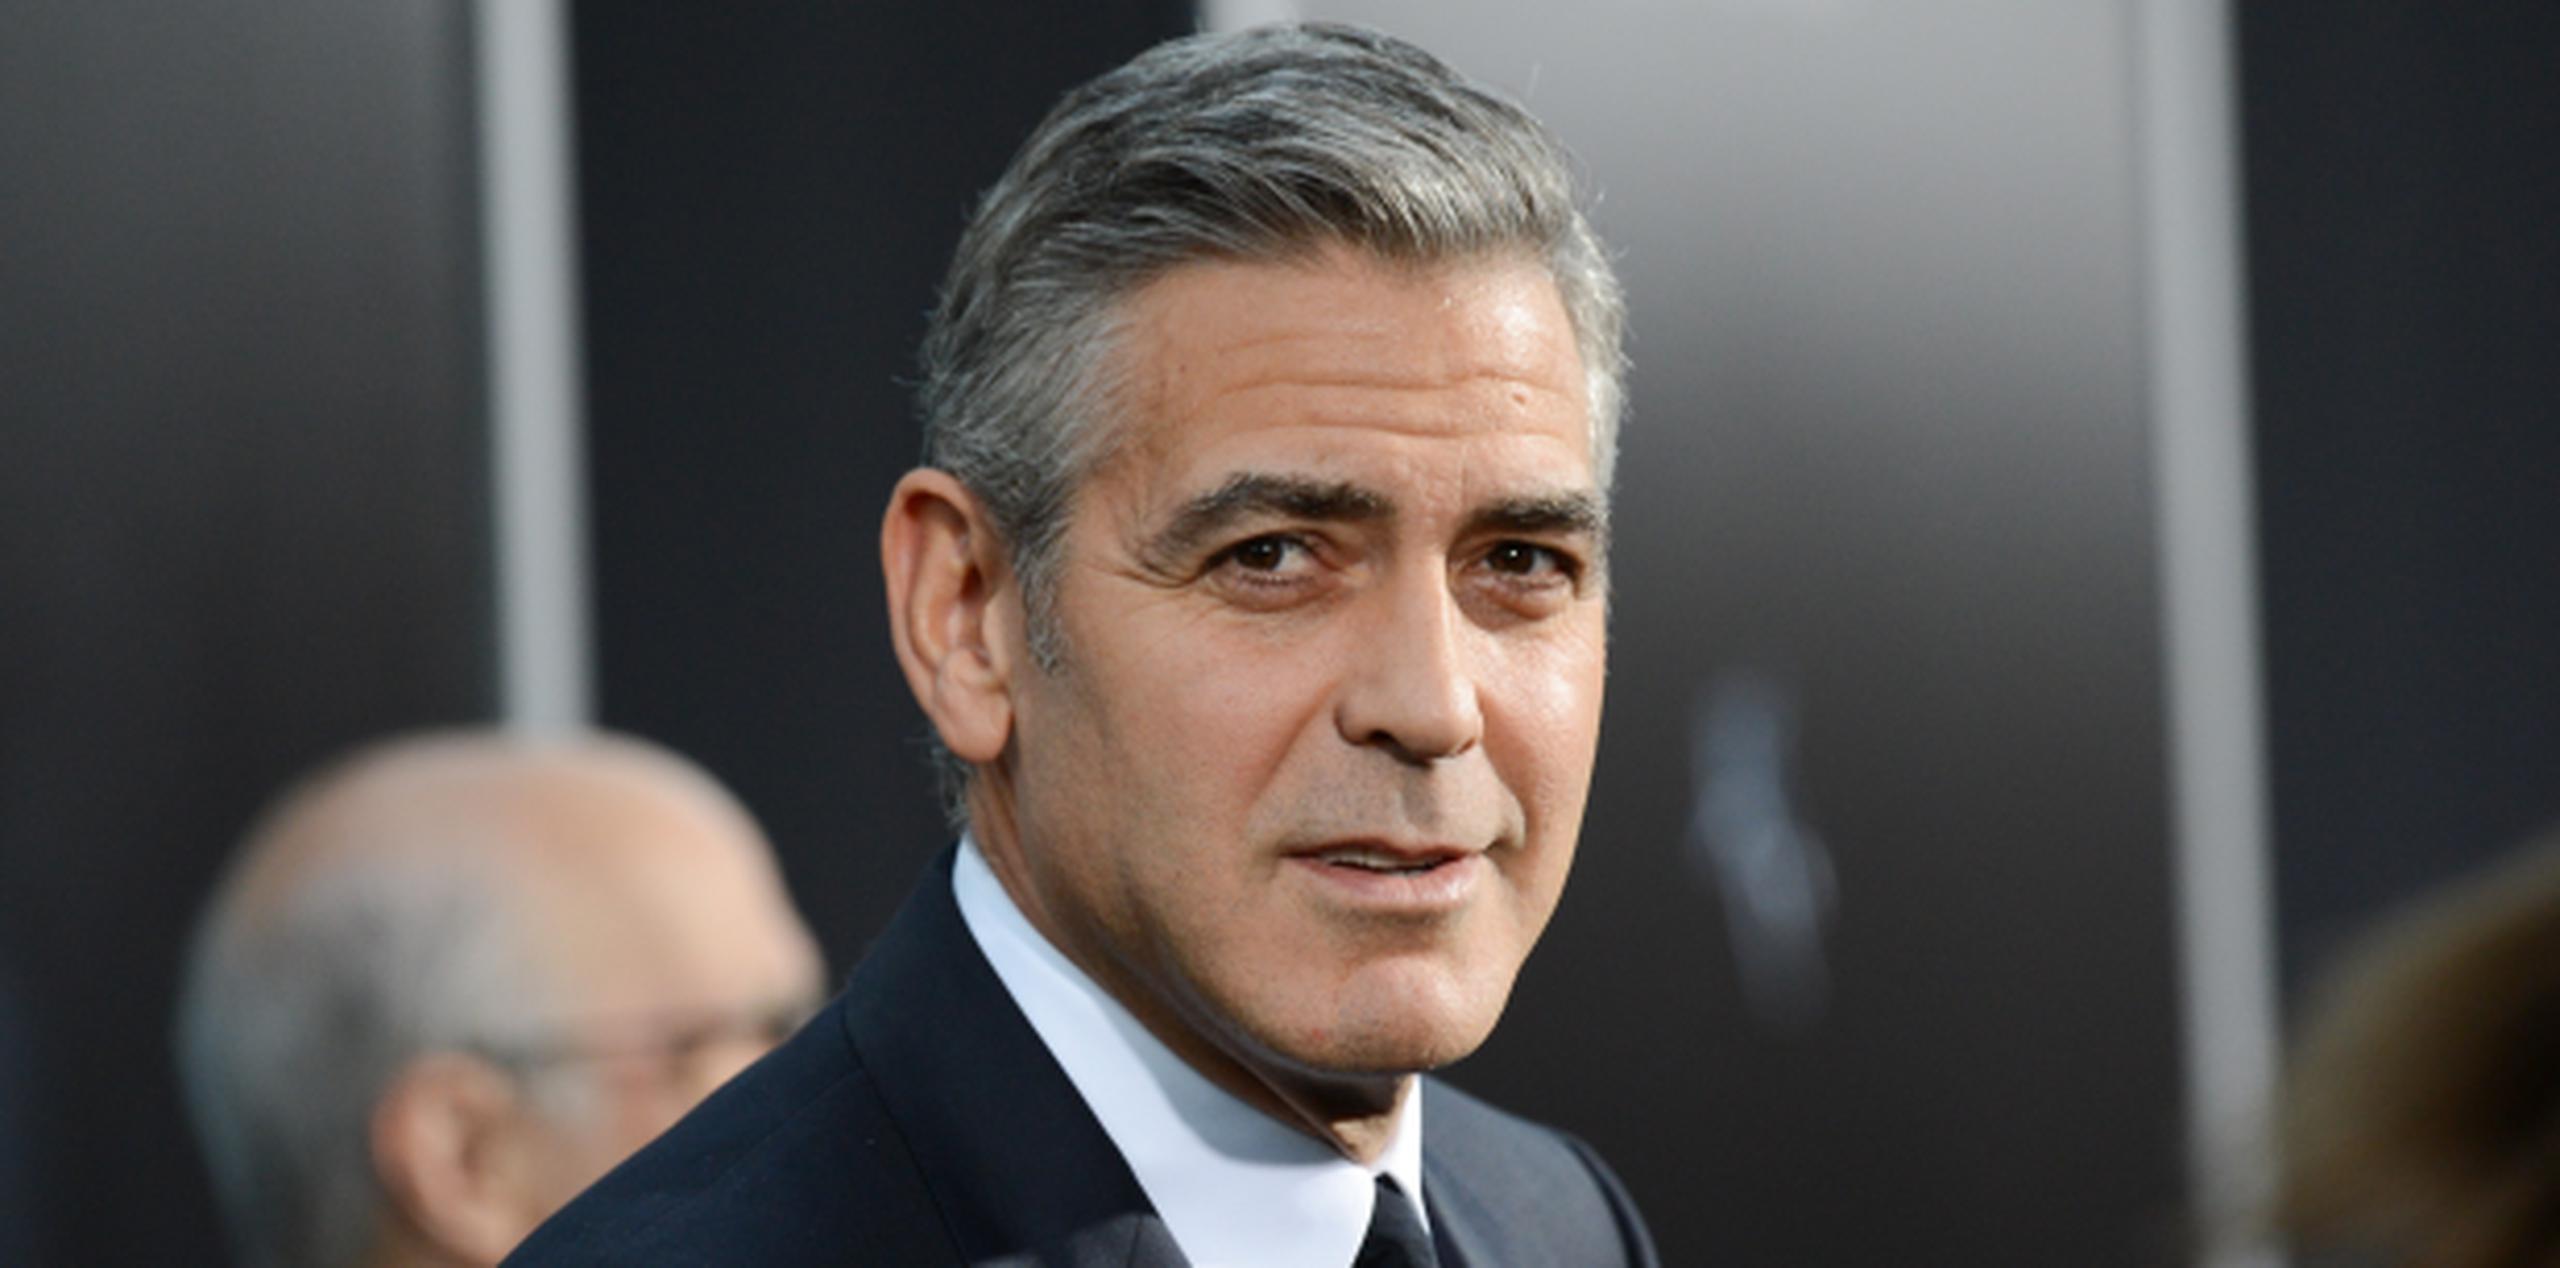 El actor George Clooney dijo que utilizó el plan de seguridad como una medida de precaución ante los hackers. (Archivo/AP)